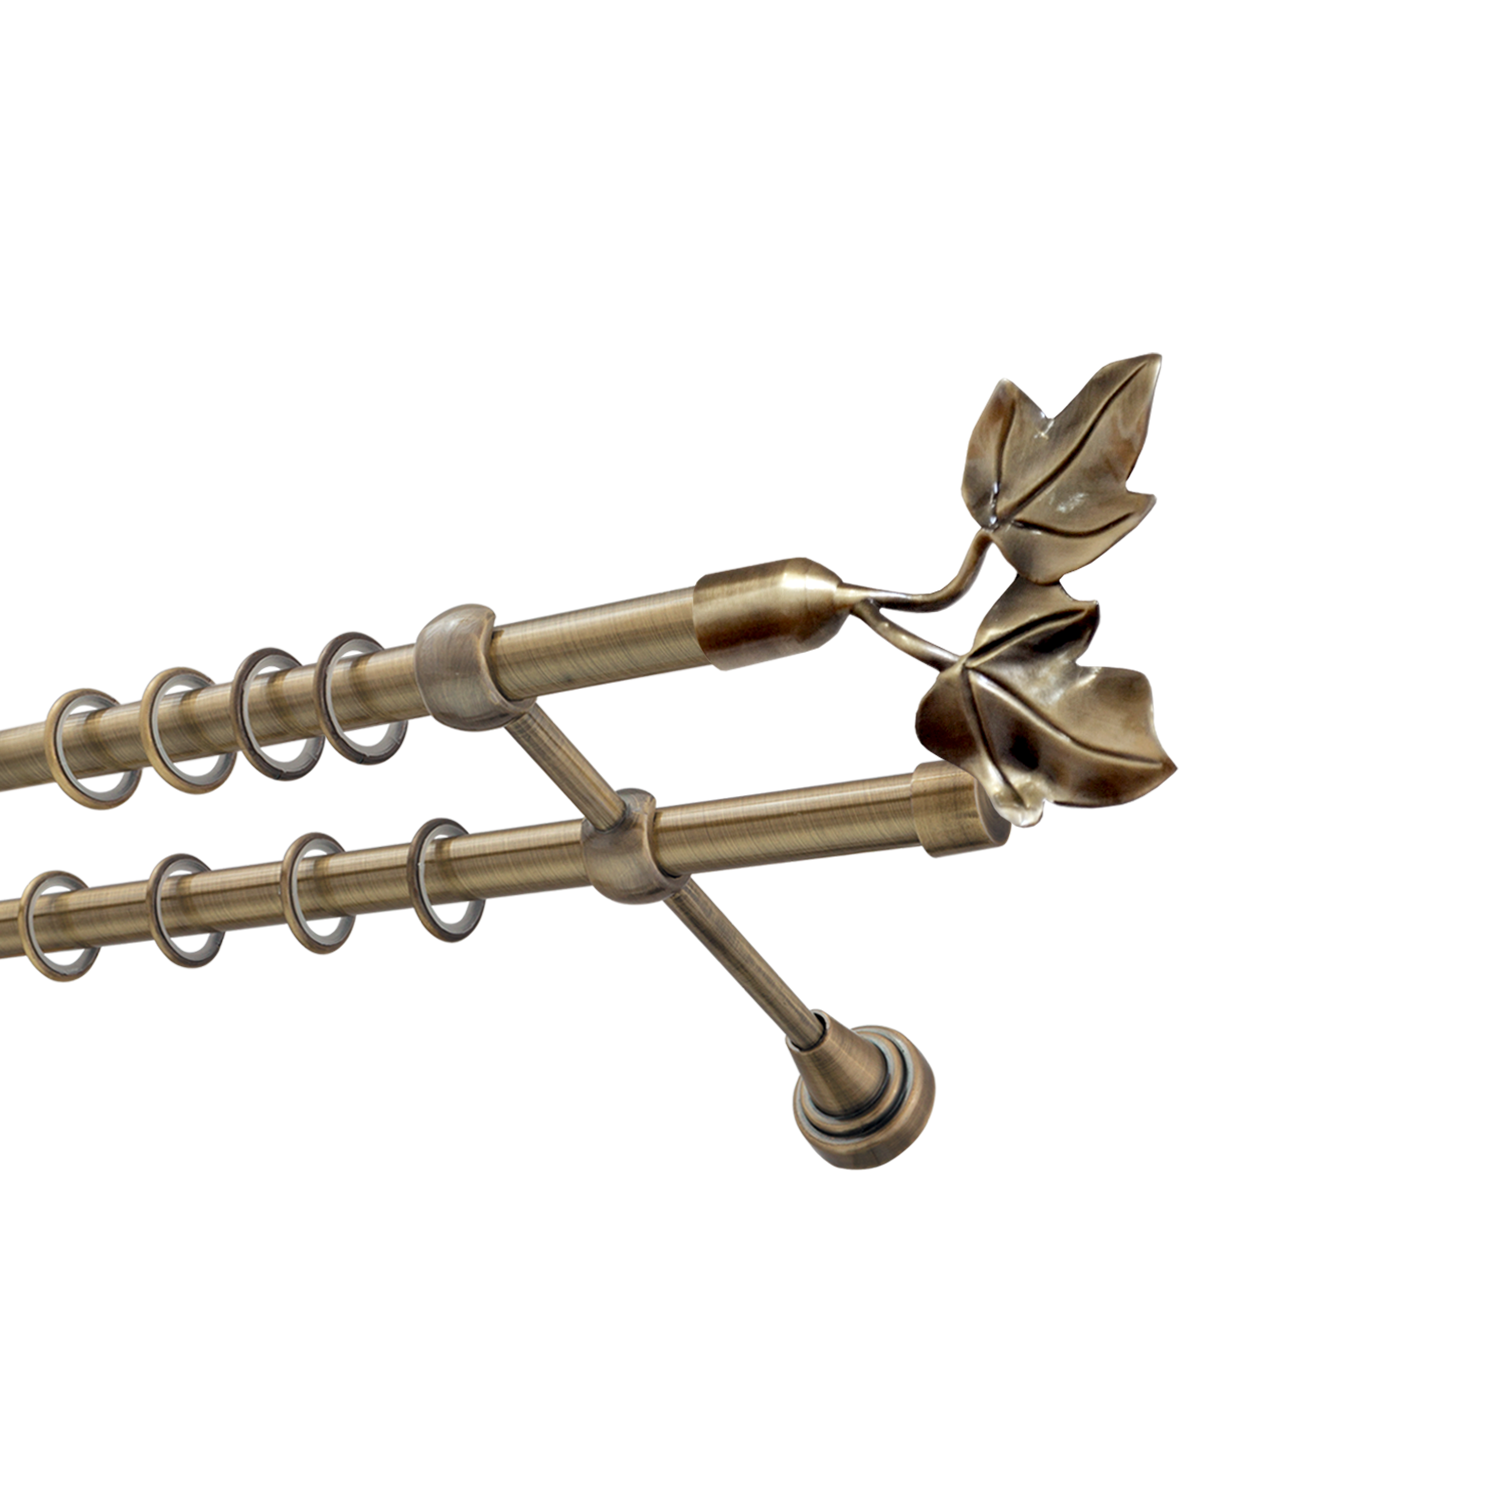 Металлический карниз для штор Листья, двухрядный 16/16 мм, бронза, гладкая штанга, длина 140 см - фото Wikidecor.ru